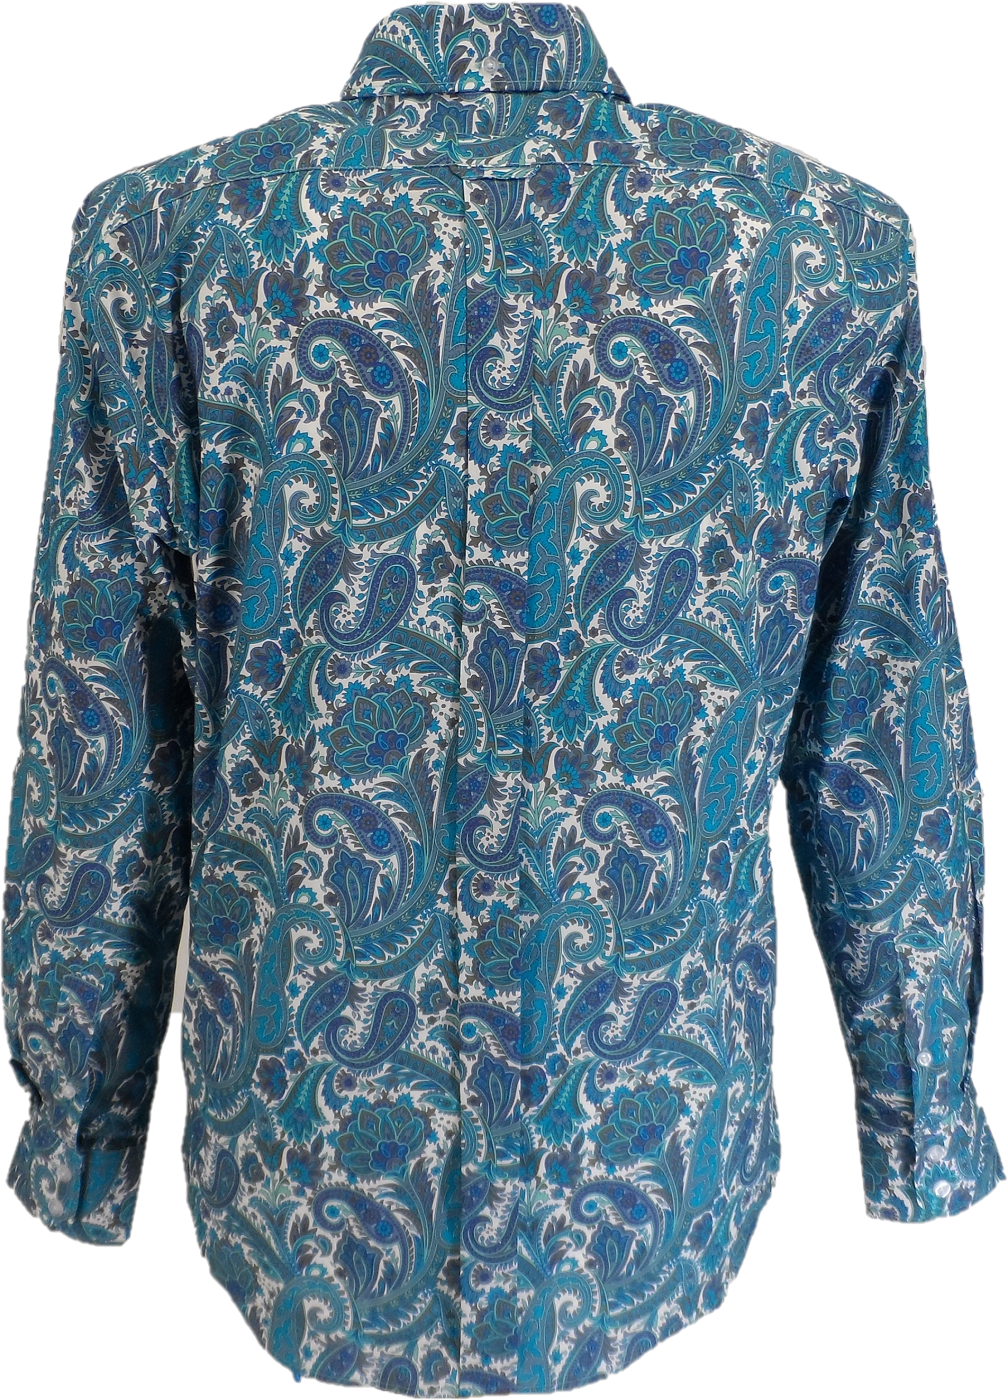 Mazeys chemise homme rétro turquoise années 60 et 70 à motif cachemire